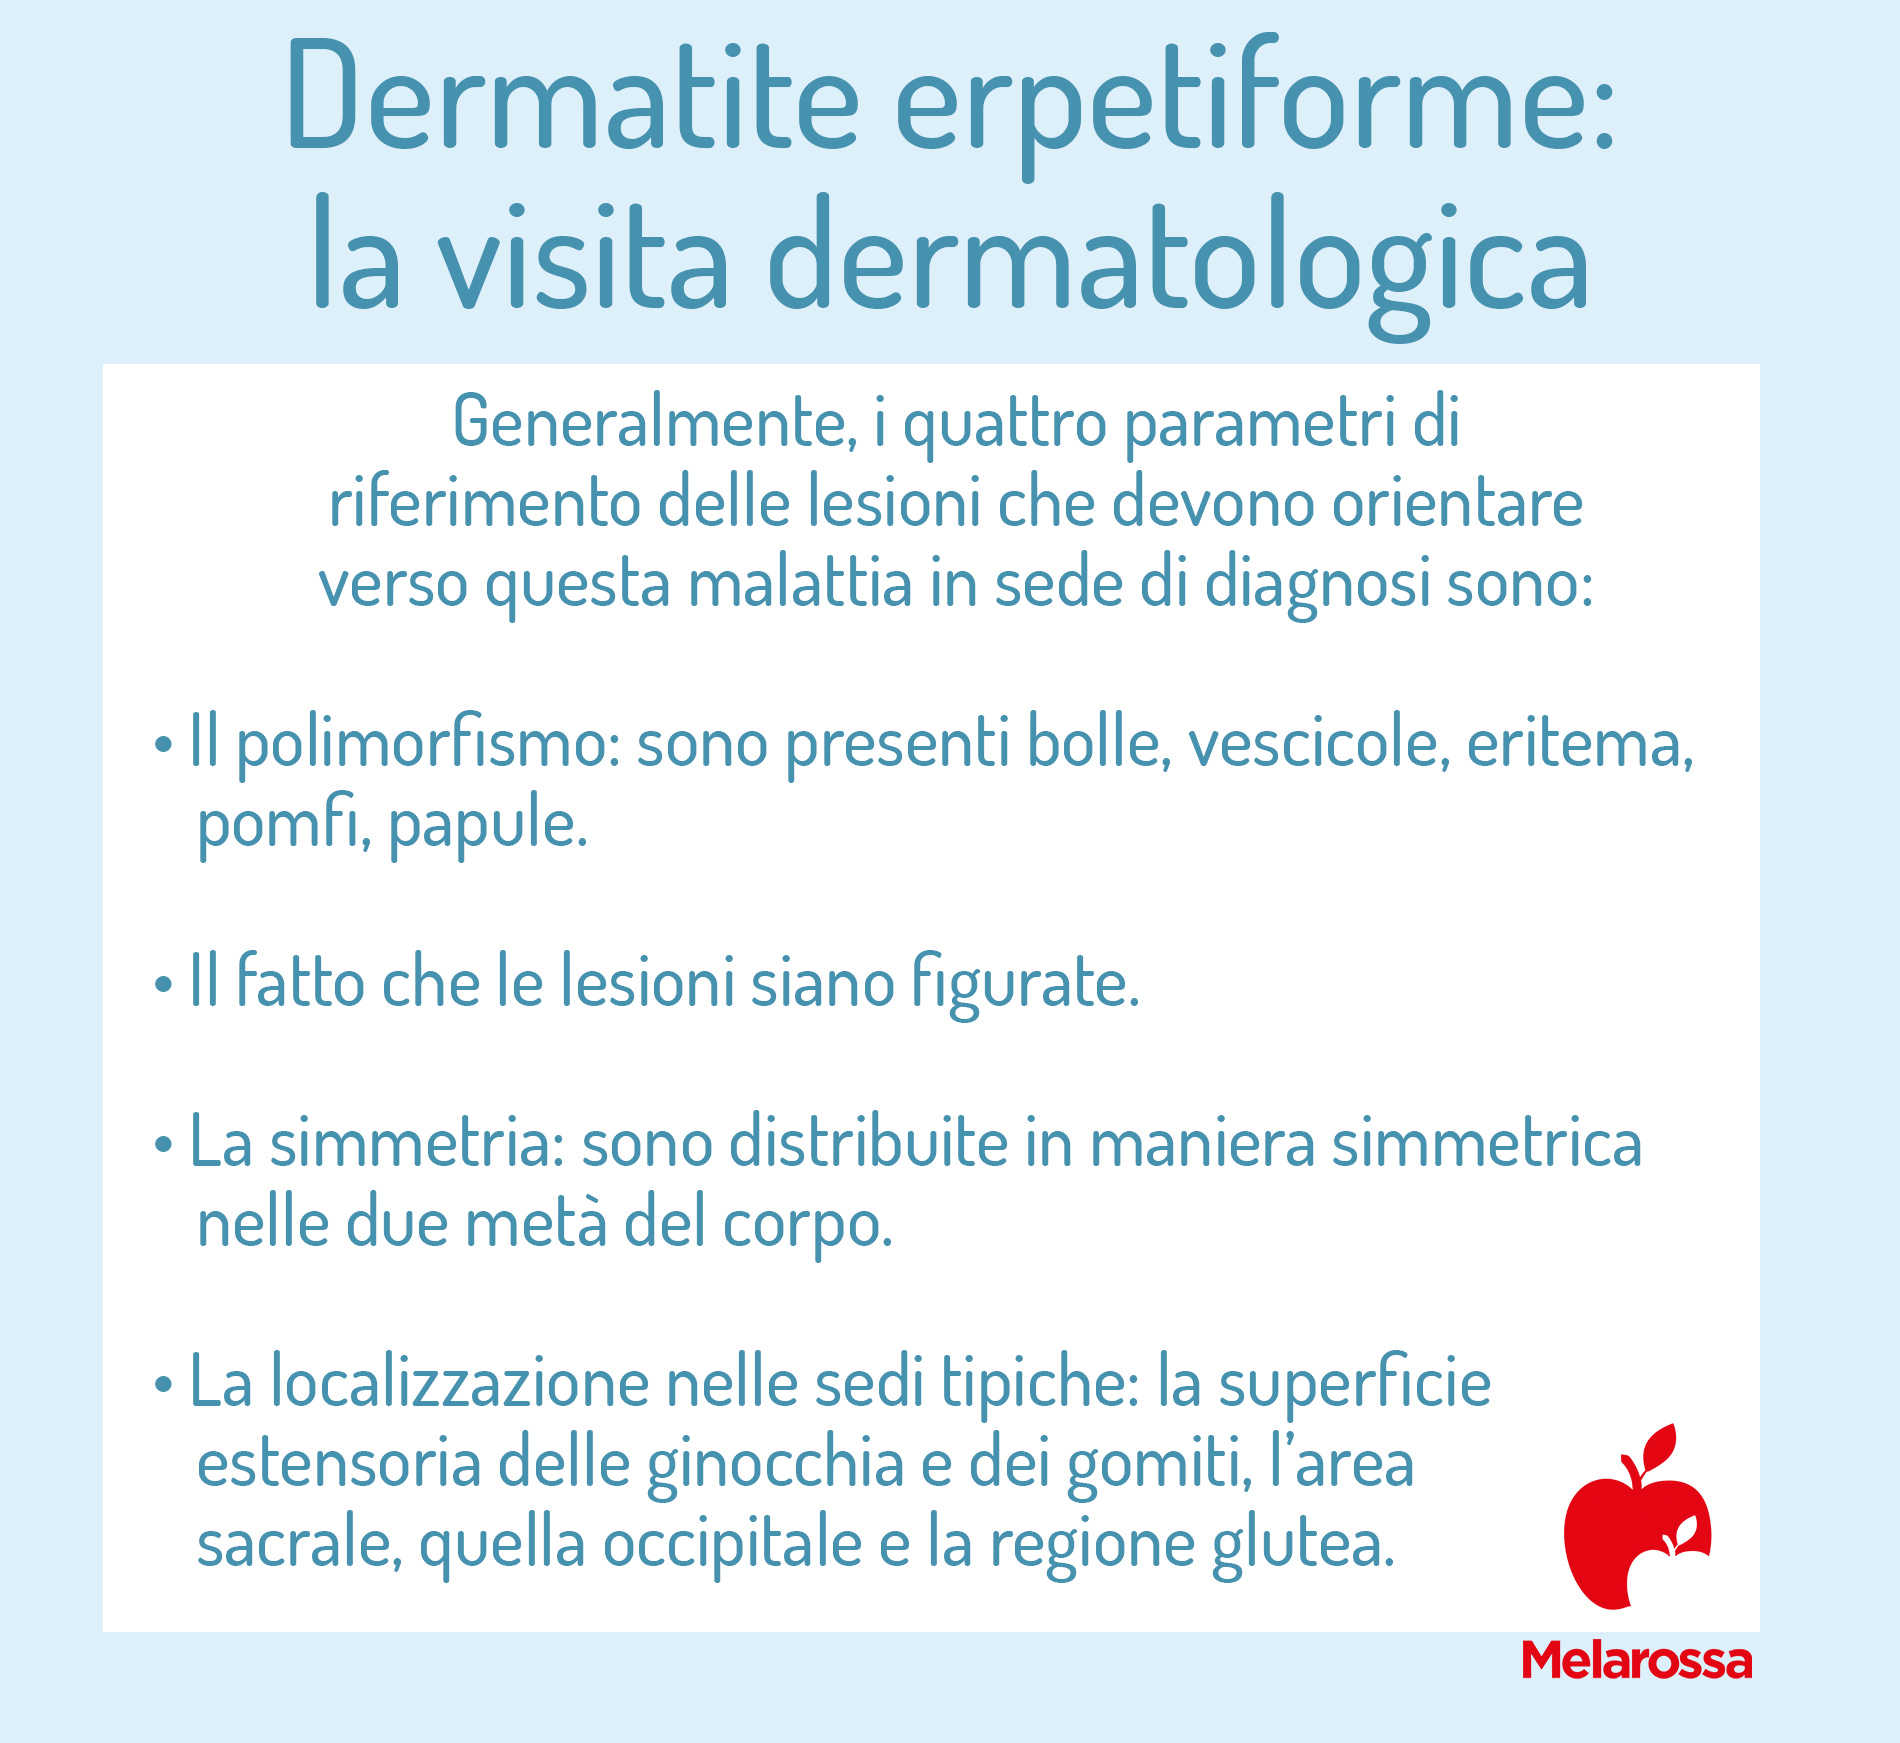 dermatite erpetiforme: visita dermatologica